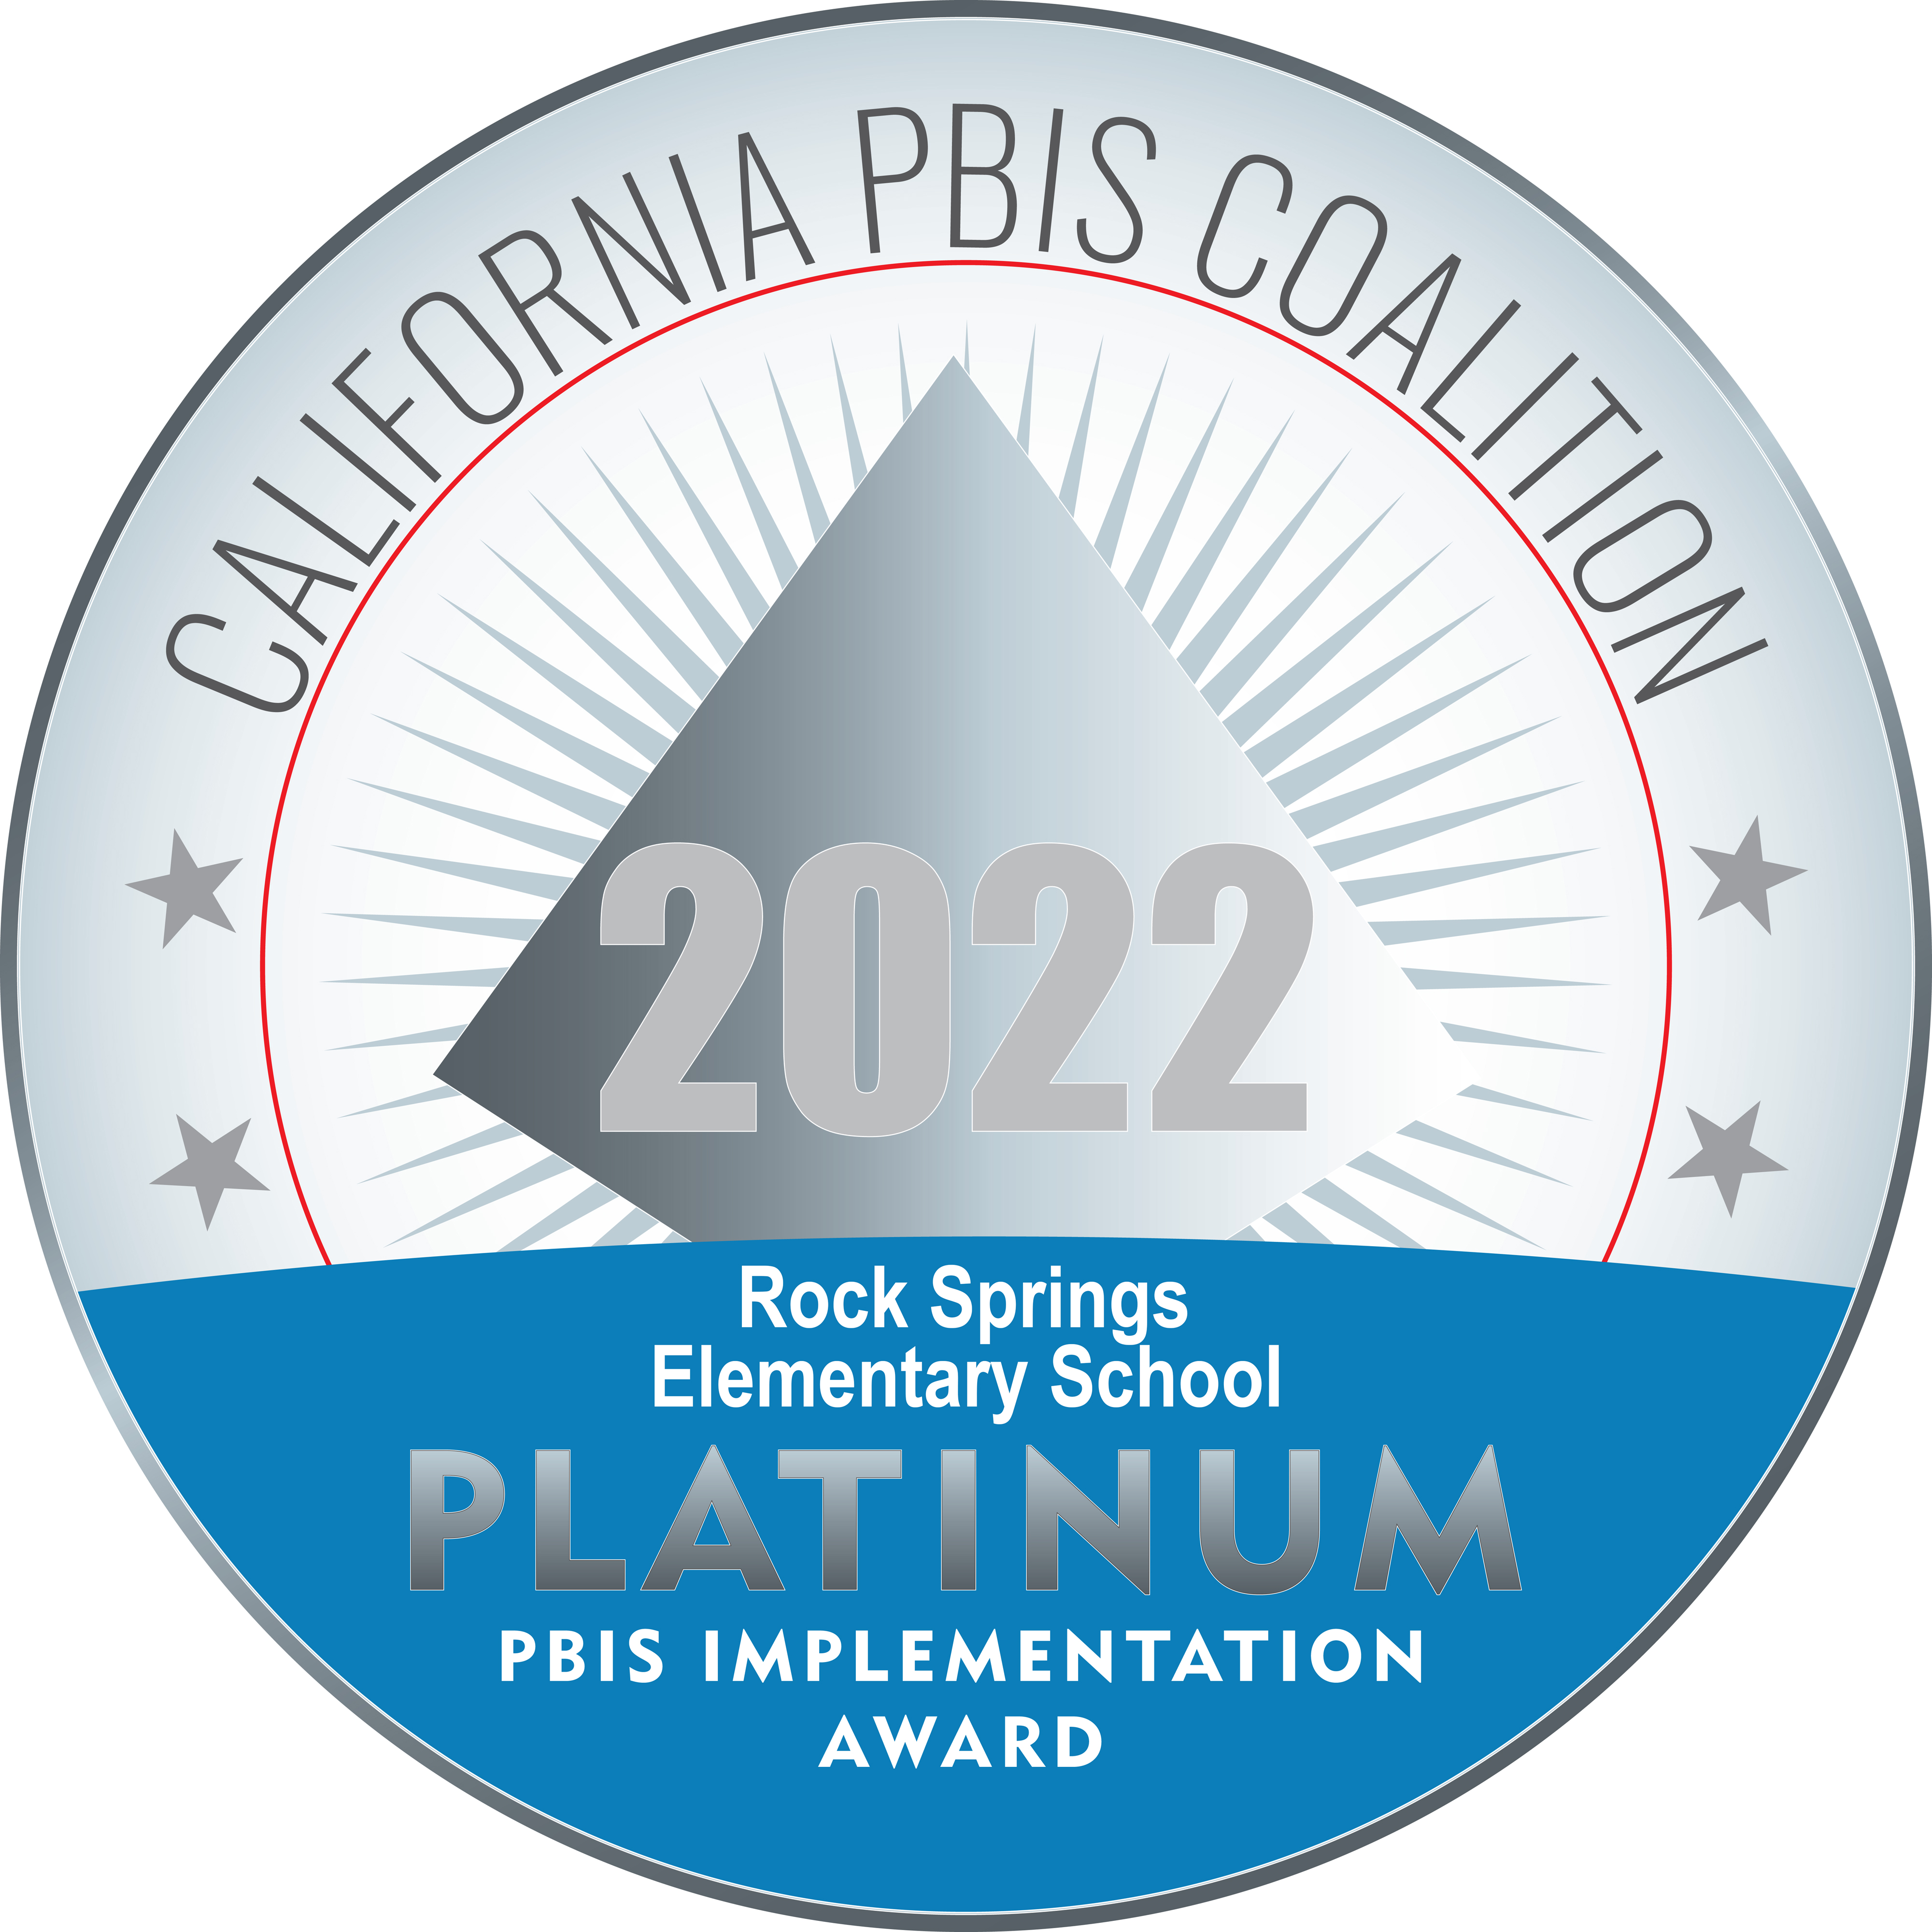 Platinum PBIS award